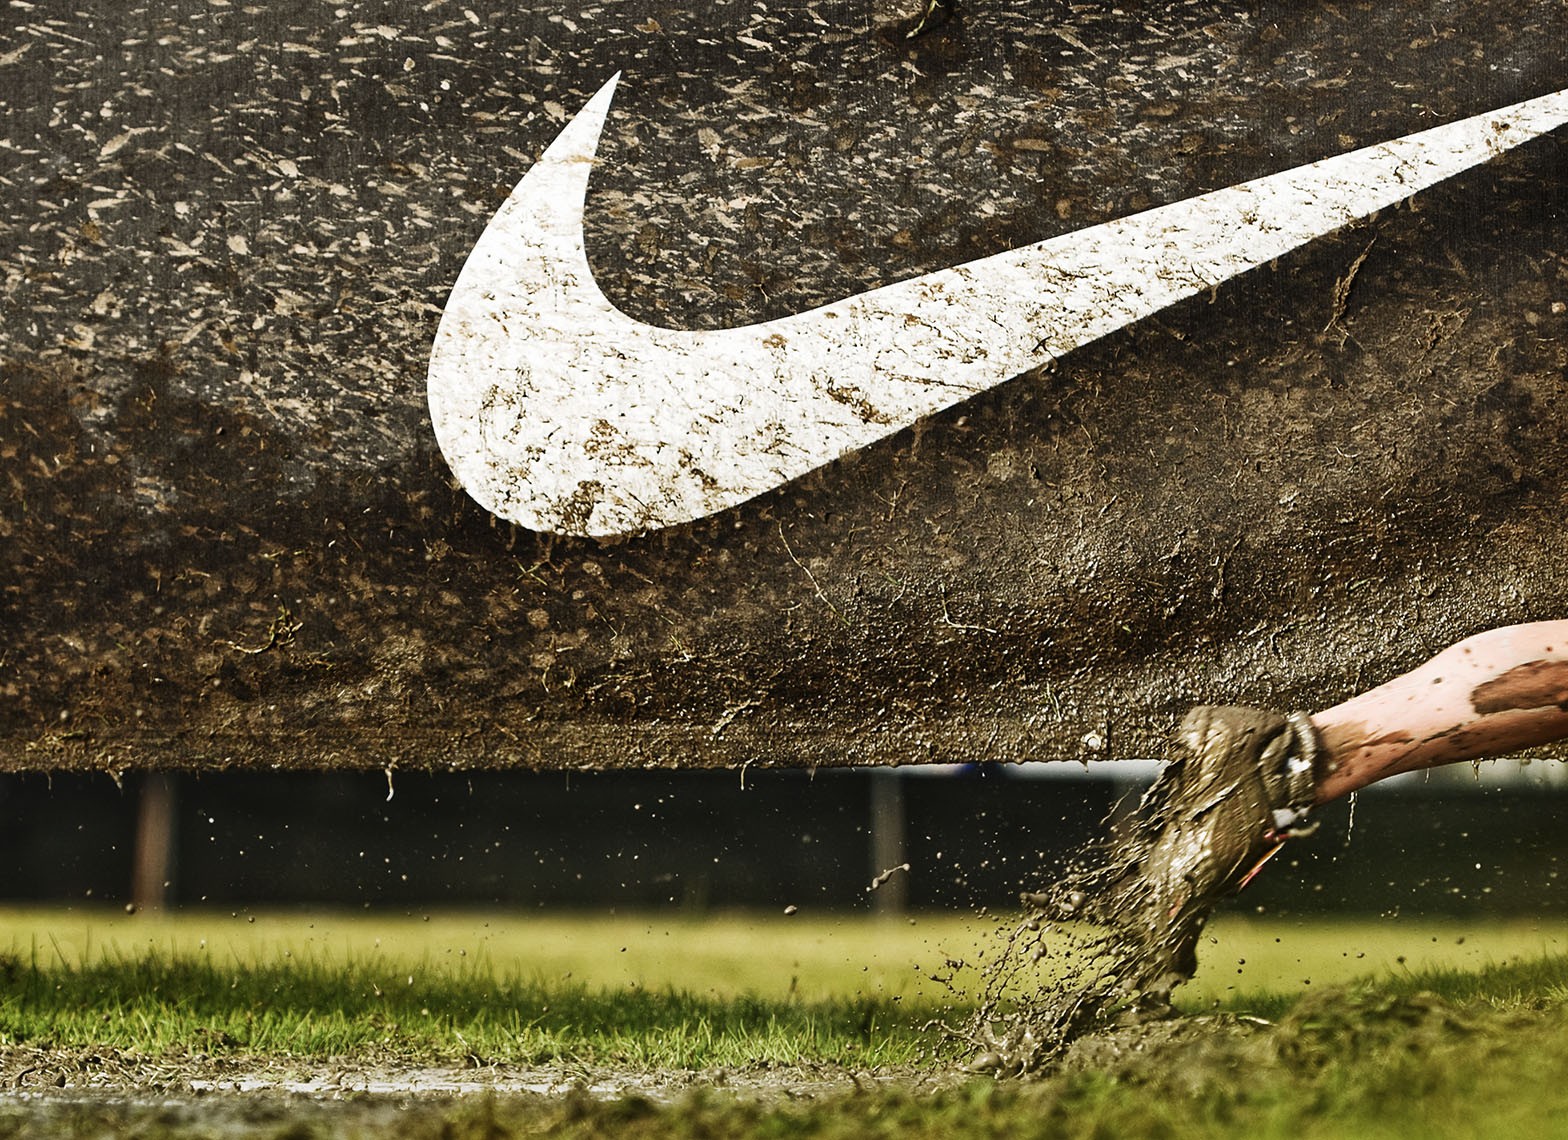 NikeCrossNationals_DanRoot_02.JPG